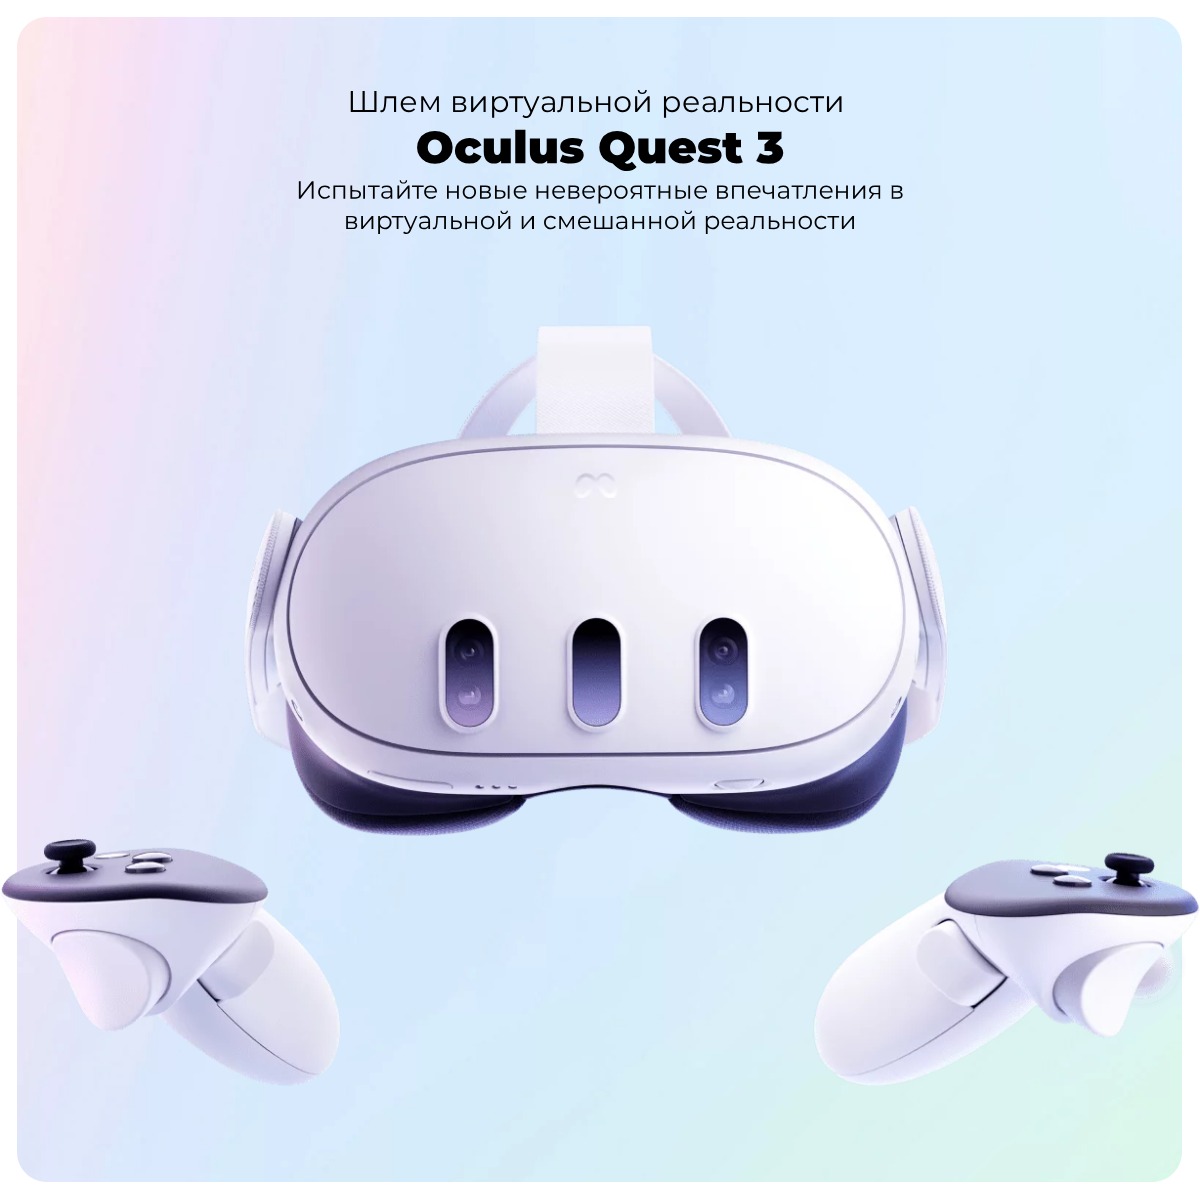 Oculus-Quest-3-128Gb-01